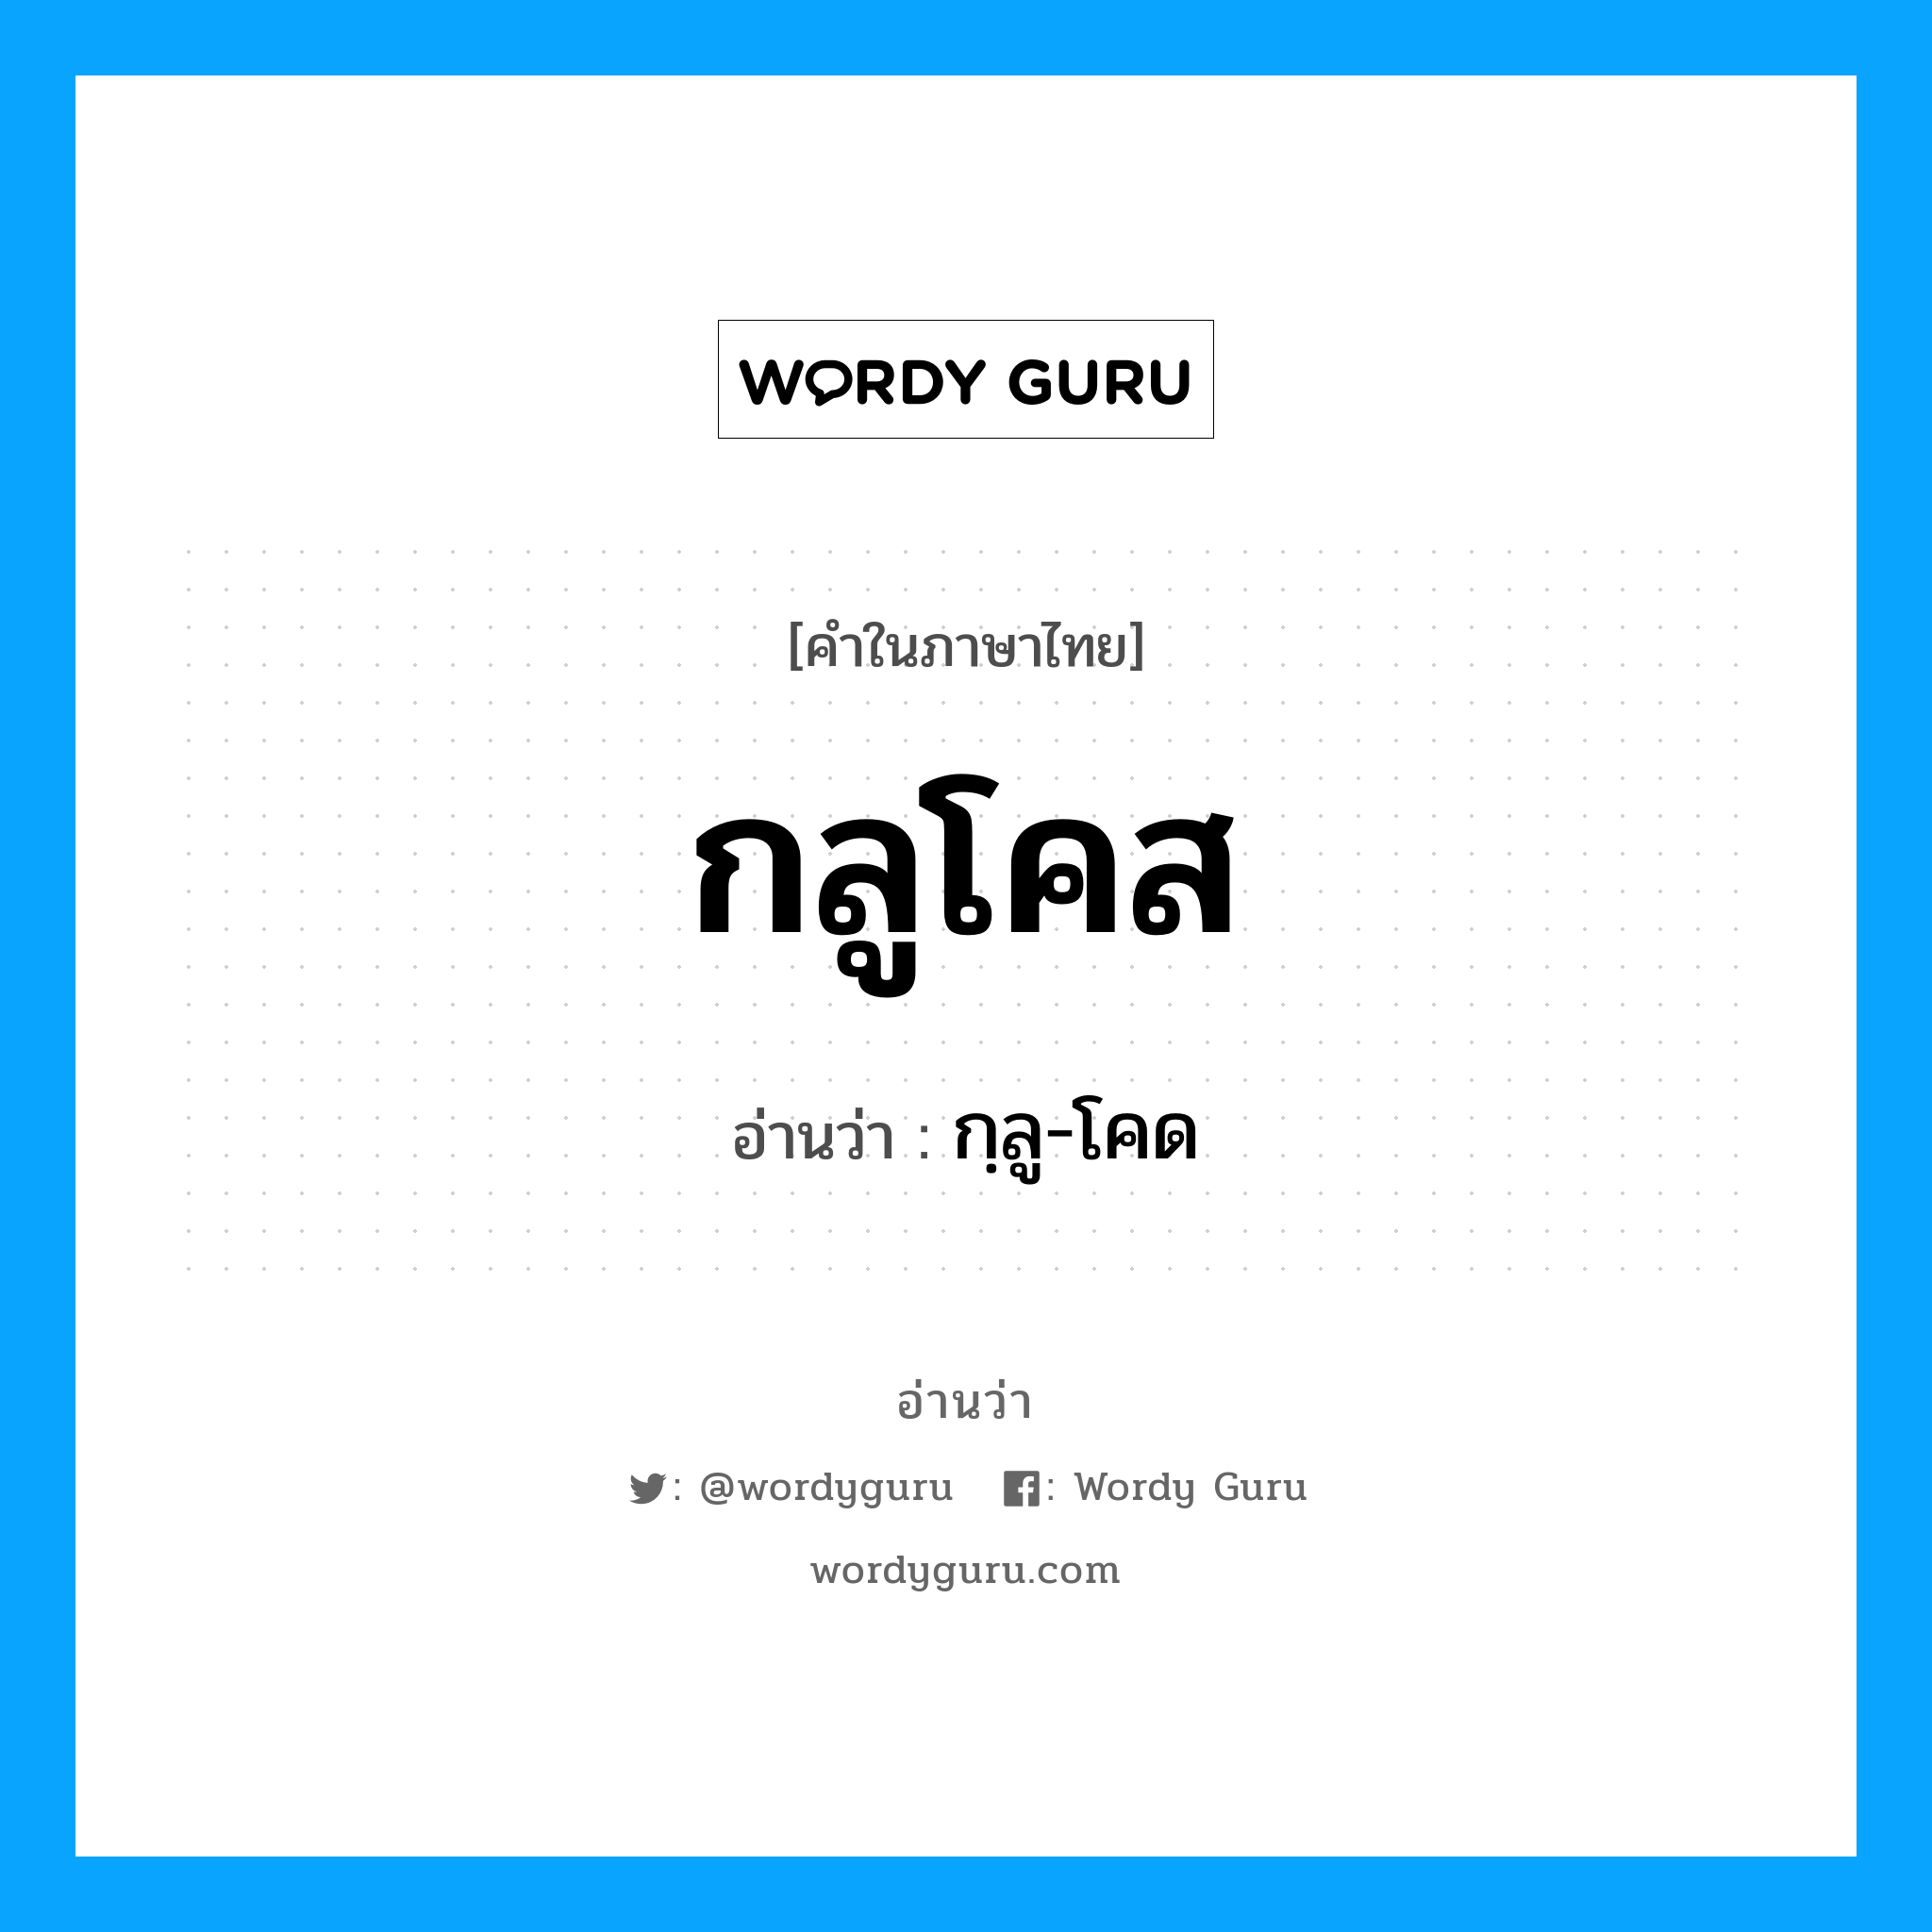 กฺลู-โคด เป็นคำอ่านของคำไหน?, คำในภาษาไทย กฺลู-โคด อ่านว่า กลูโคส